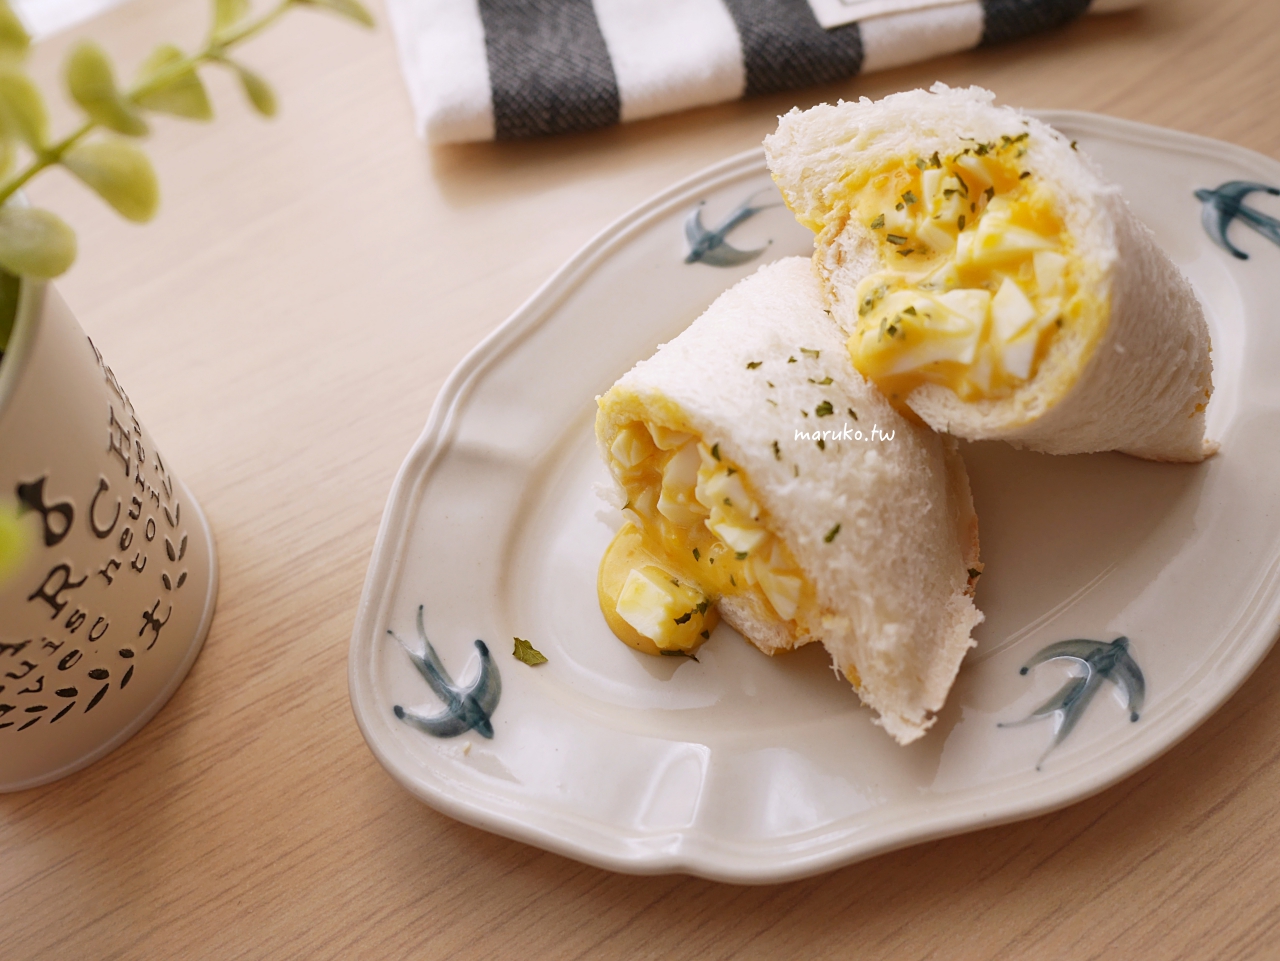 【食譜】日式蛋沙拉 日本咖啡館的蛋沙拉做法 簡單早餐吐司食譜